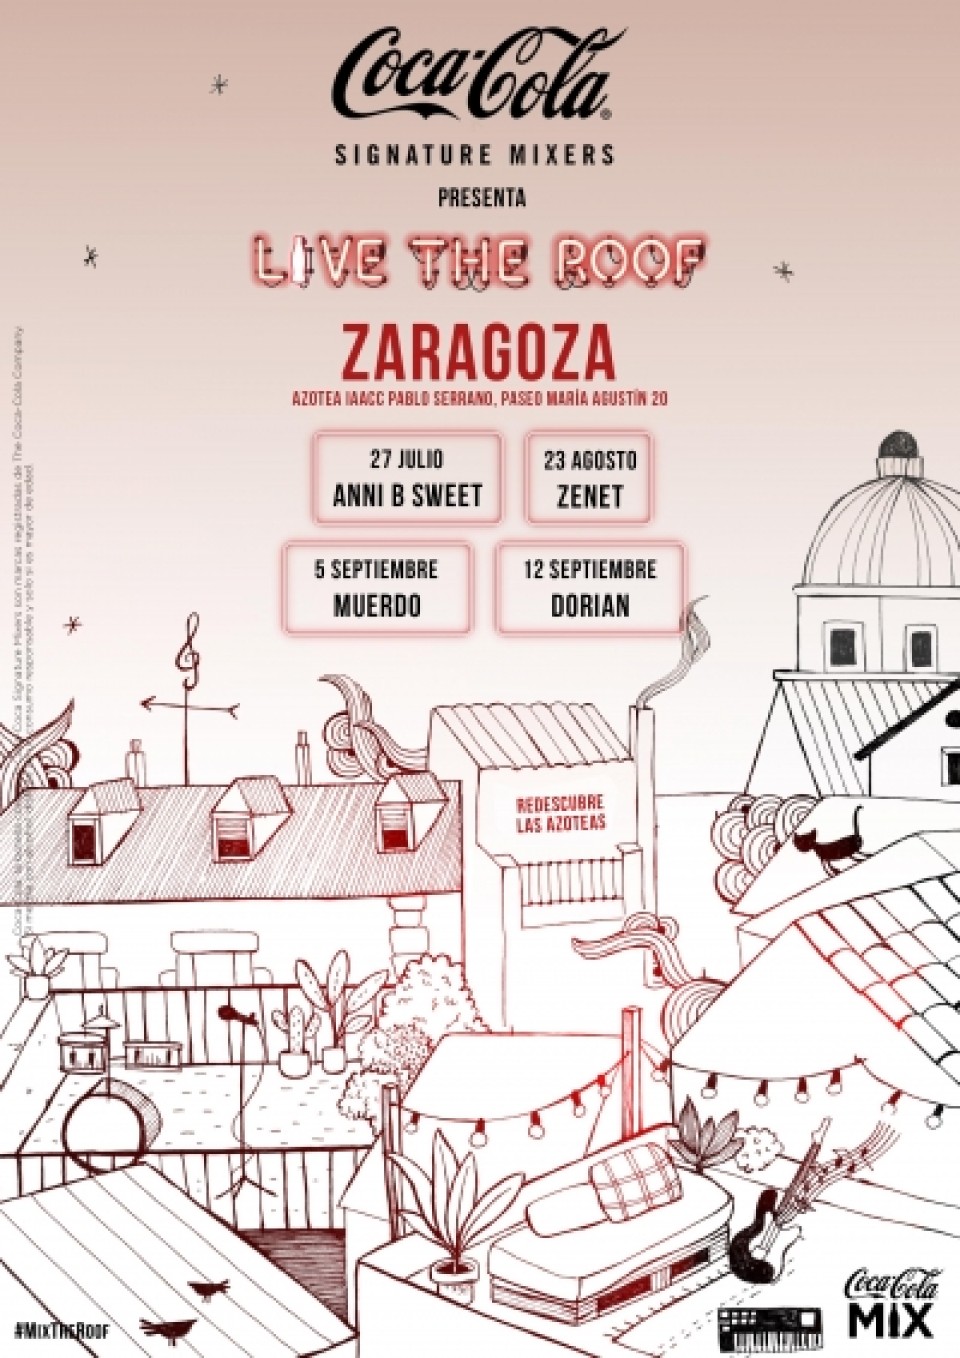 Imagen Cartel 'Live the roof' - Zaragoza